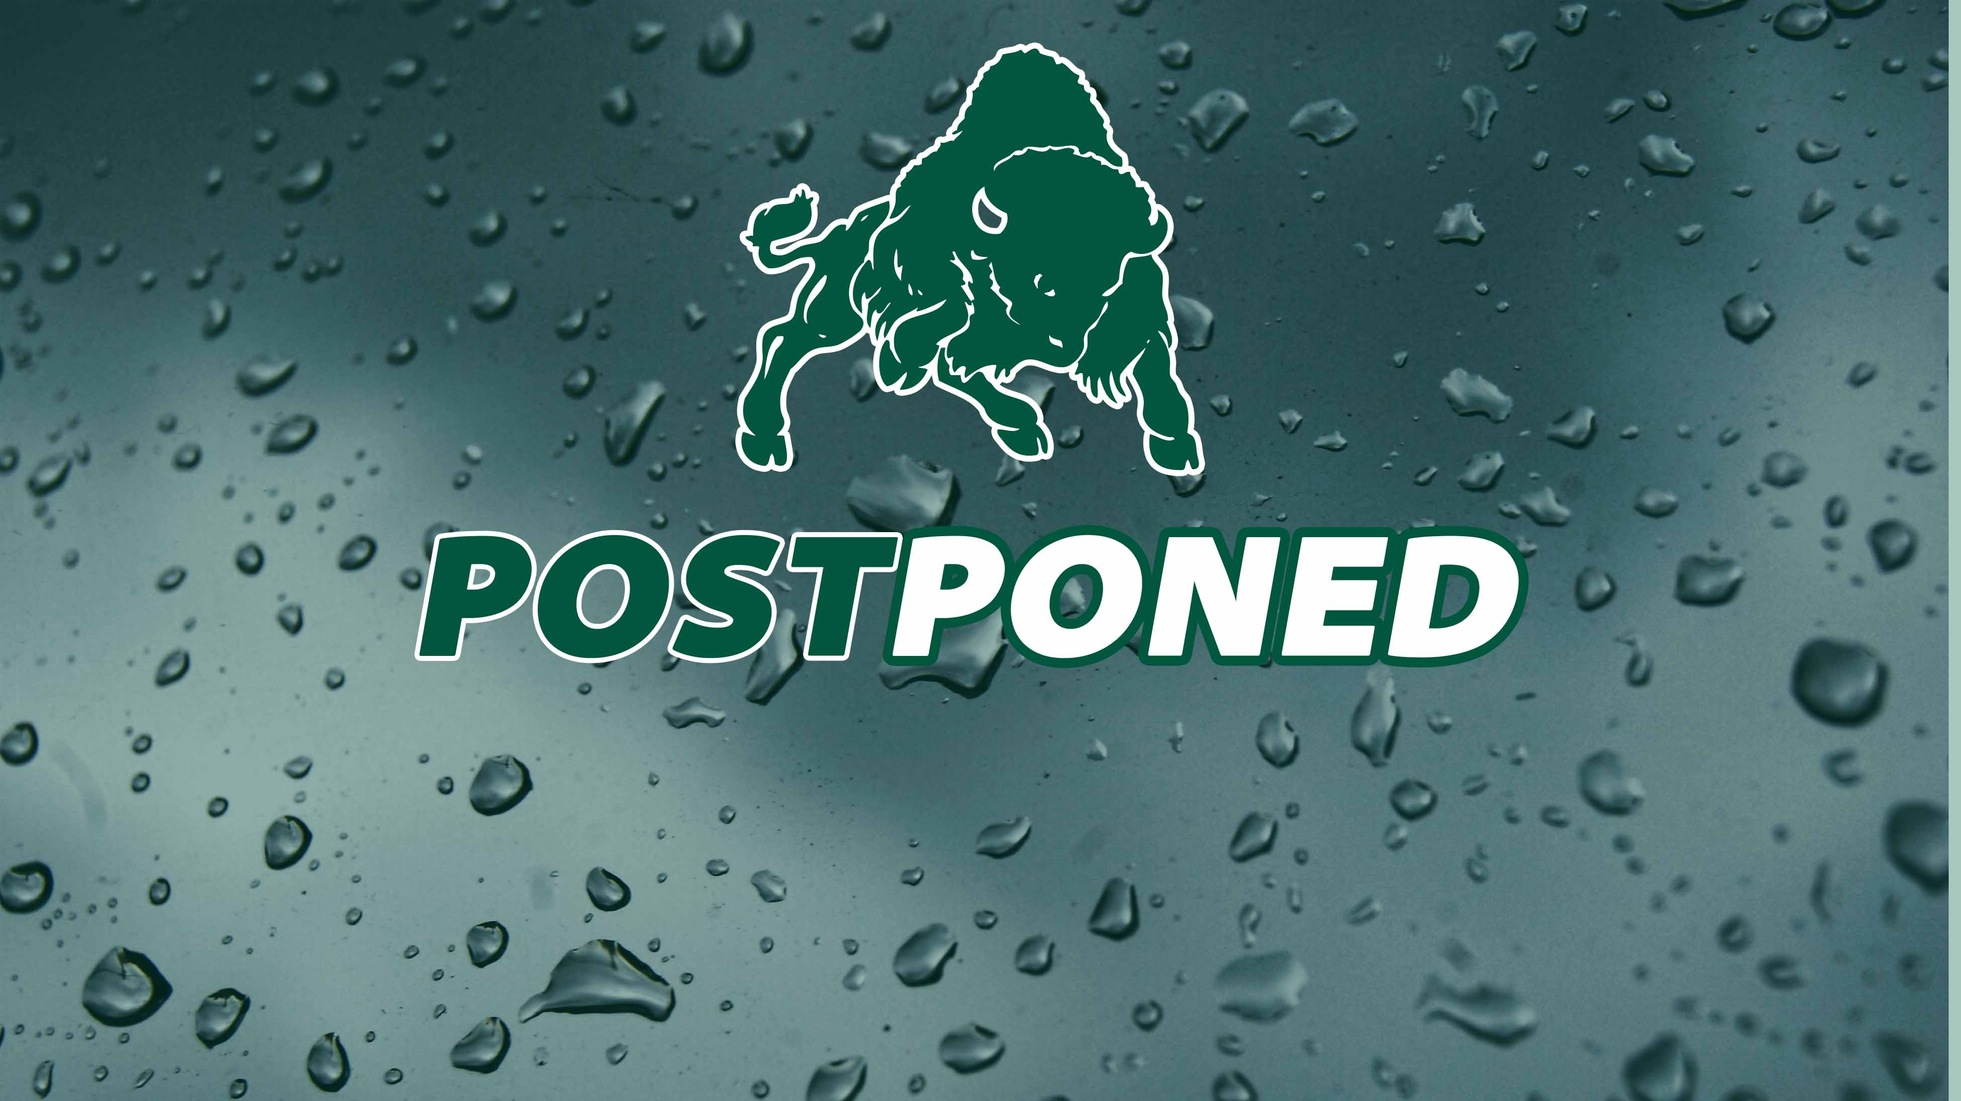 TUESDAY ALERT: Women's basketball at Mount Aloysius postponed